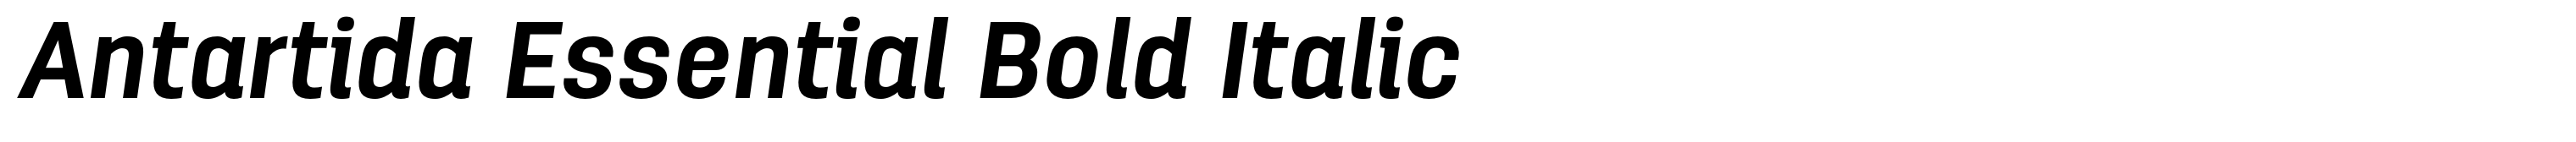 Antartida Essential Bold Italic